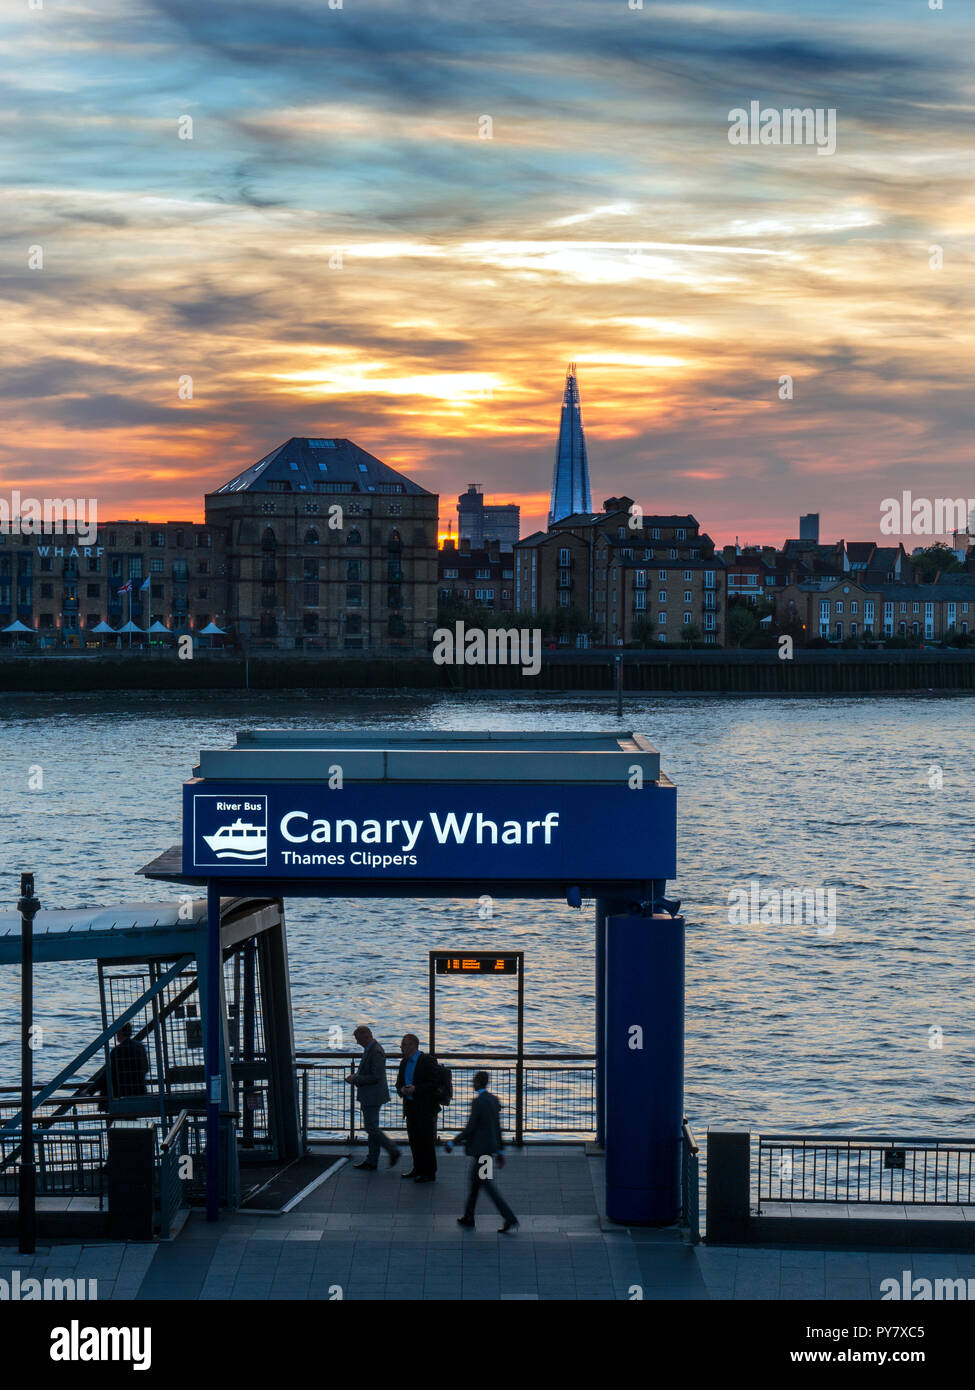 CANARY WHARF PENDLER Pier Einbootstelle für Thames Clipper Flussschiffe, Columbia Wharf Shard, & Ort Gebäude hinter, Canary Wharf, London, Großbritannien Stockfoto